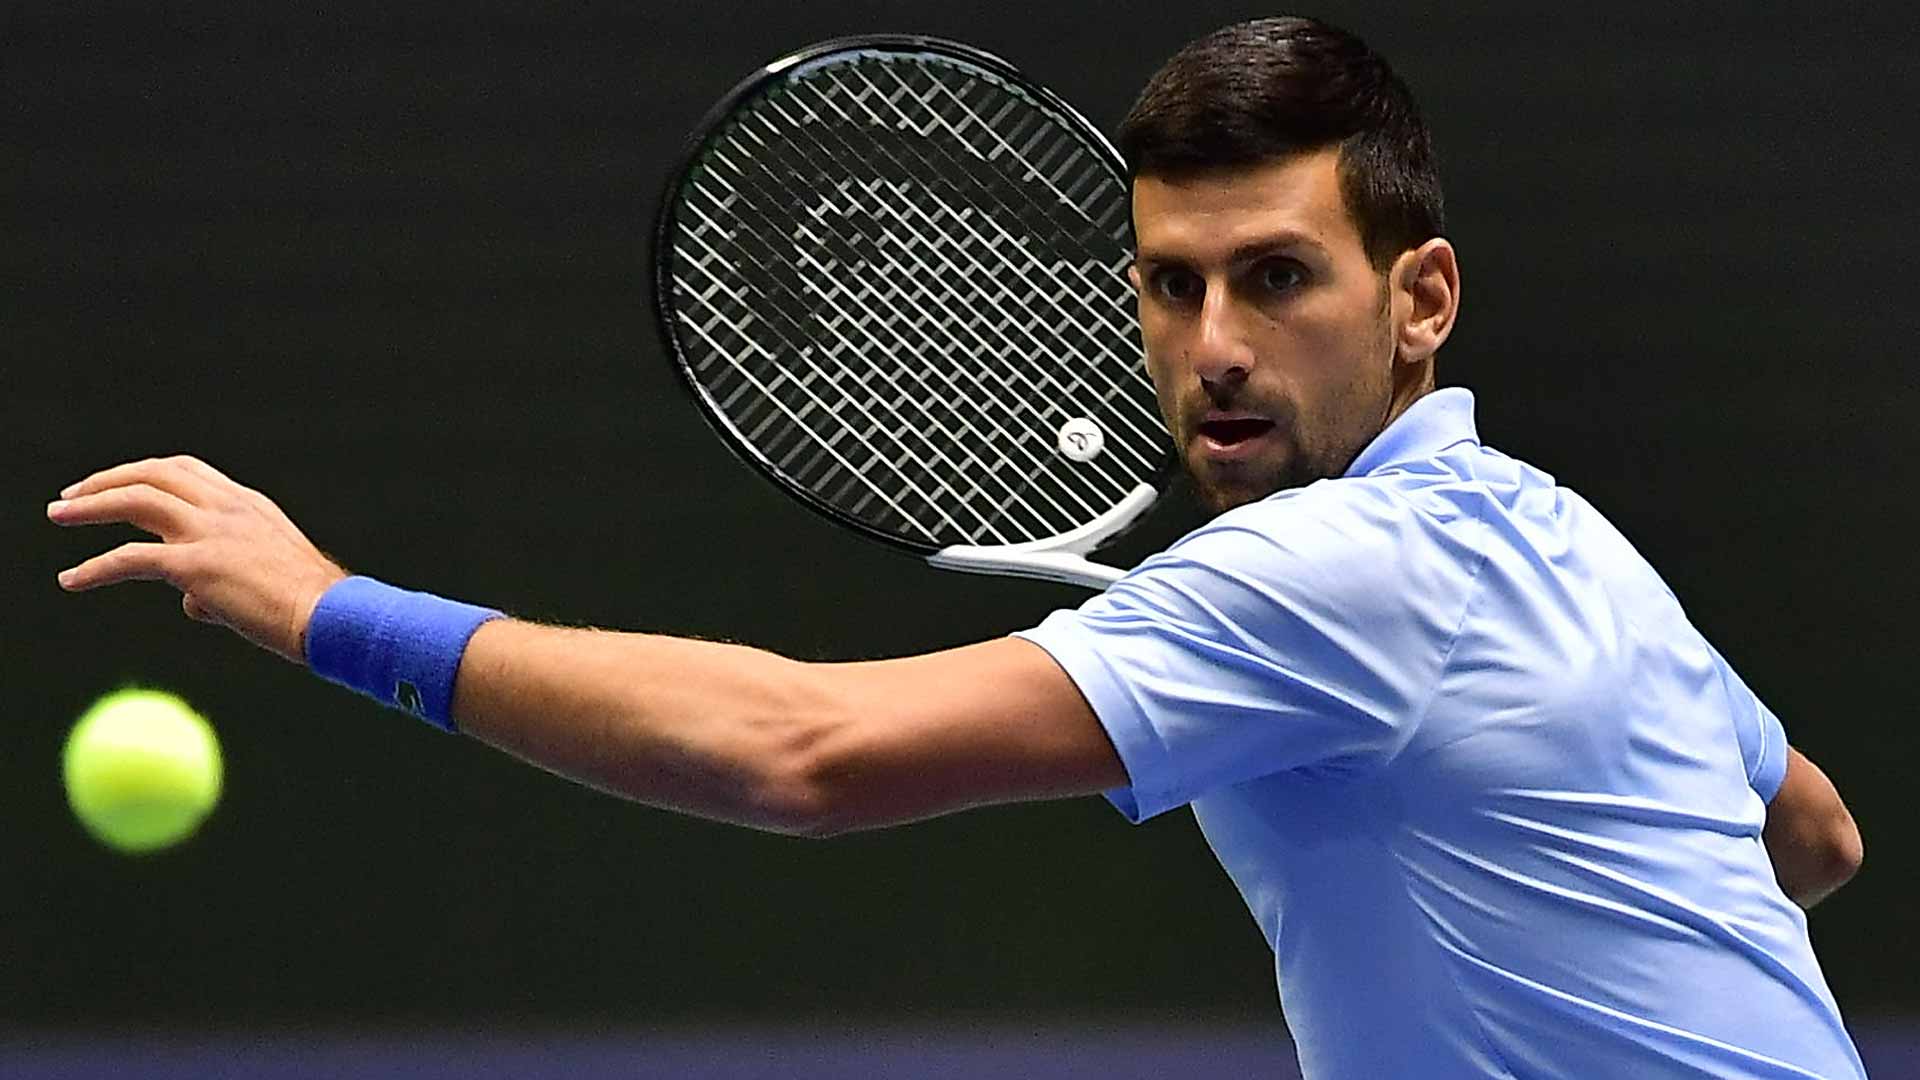 Novak Djokovic in action against Botic van de Zandschulp on Thursday in Astana.